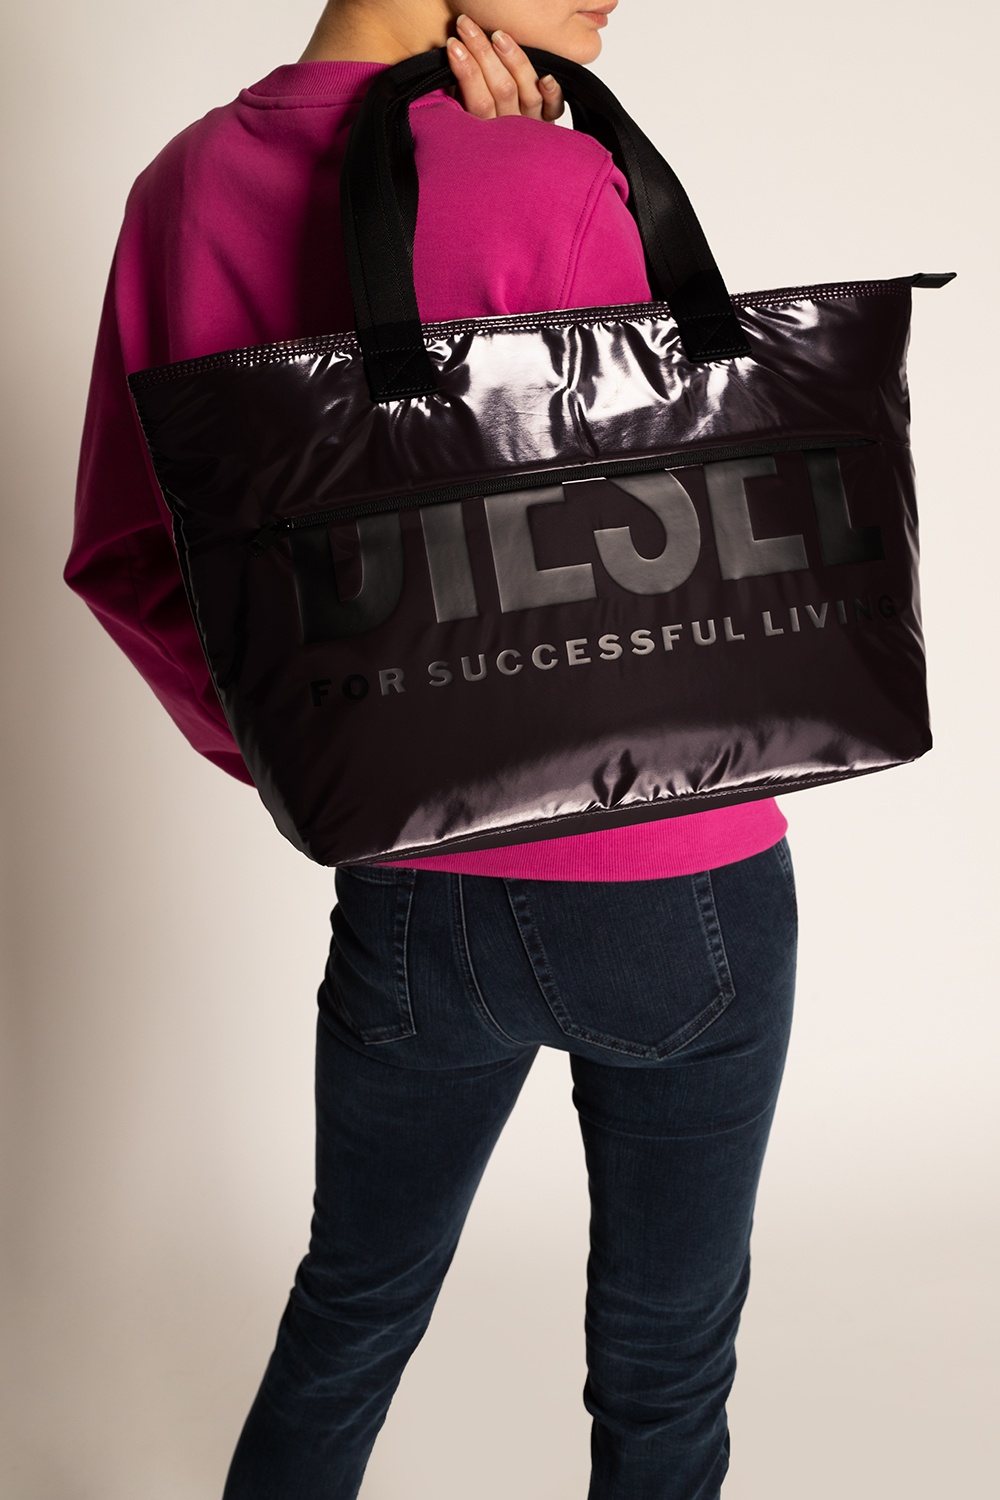 Diesel pocket bag, Women's Bags